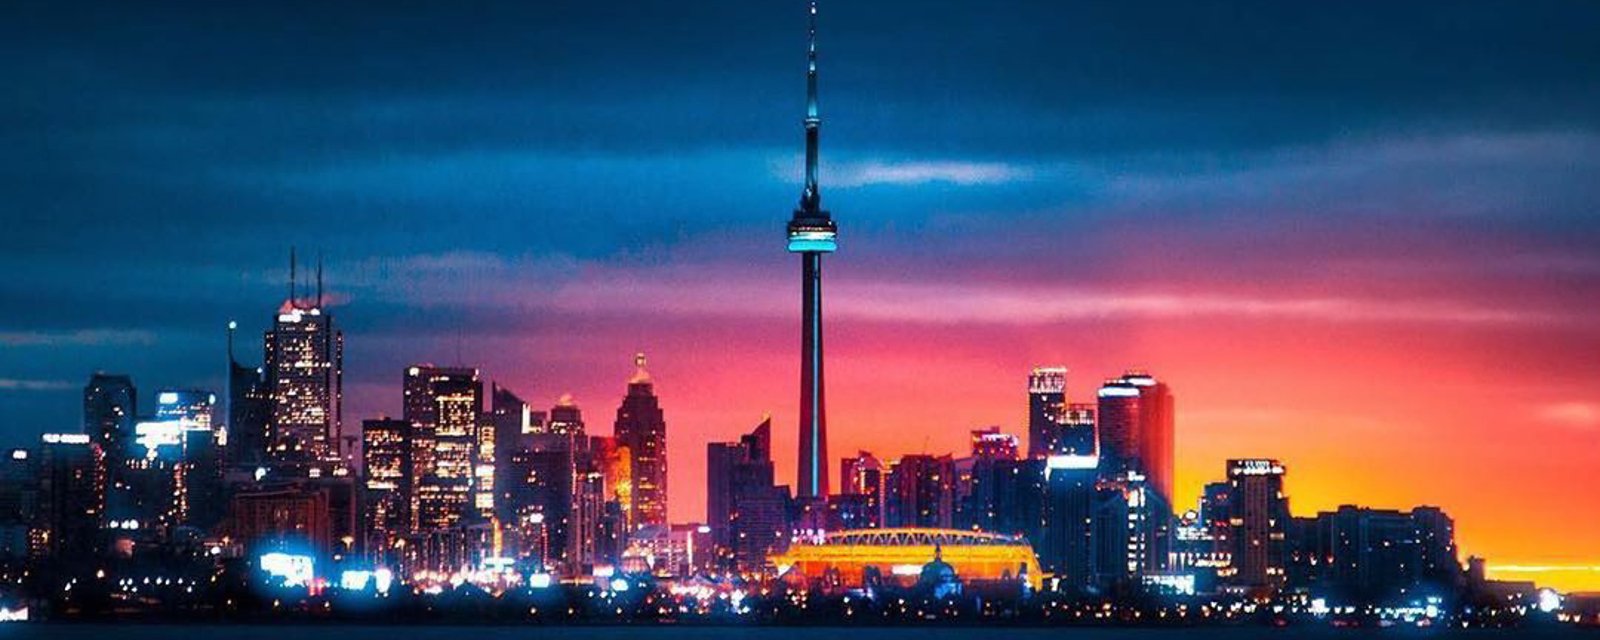 Tragédie de Laval : La ville de Toronto et la tour du CN souligneront la mémoire des victimes  